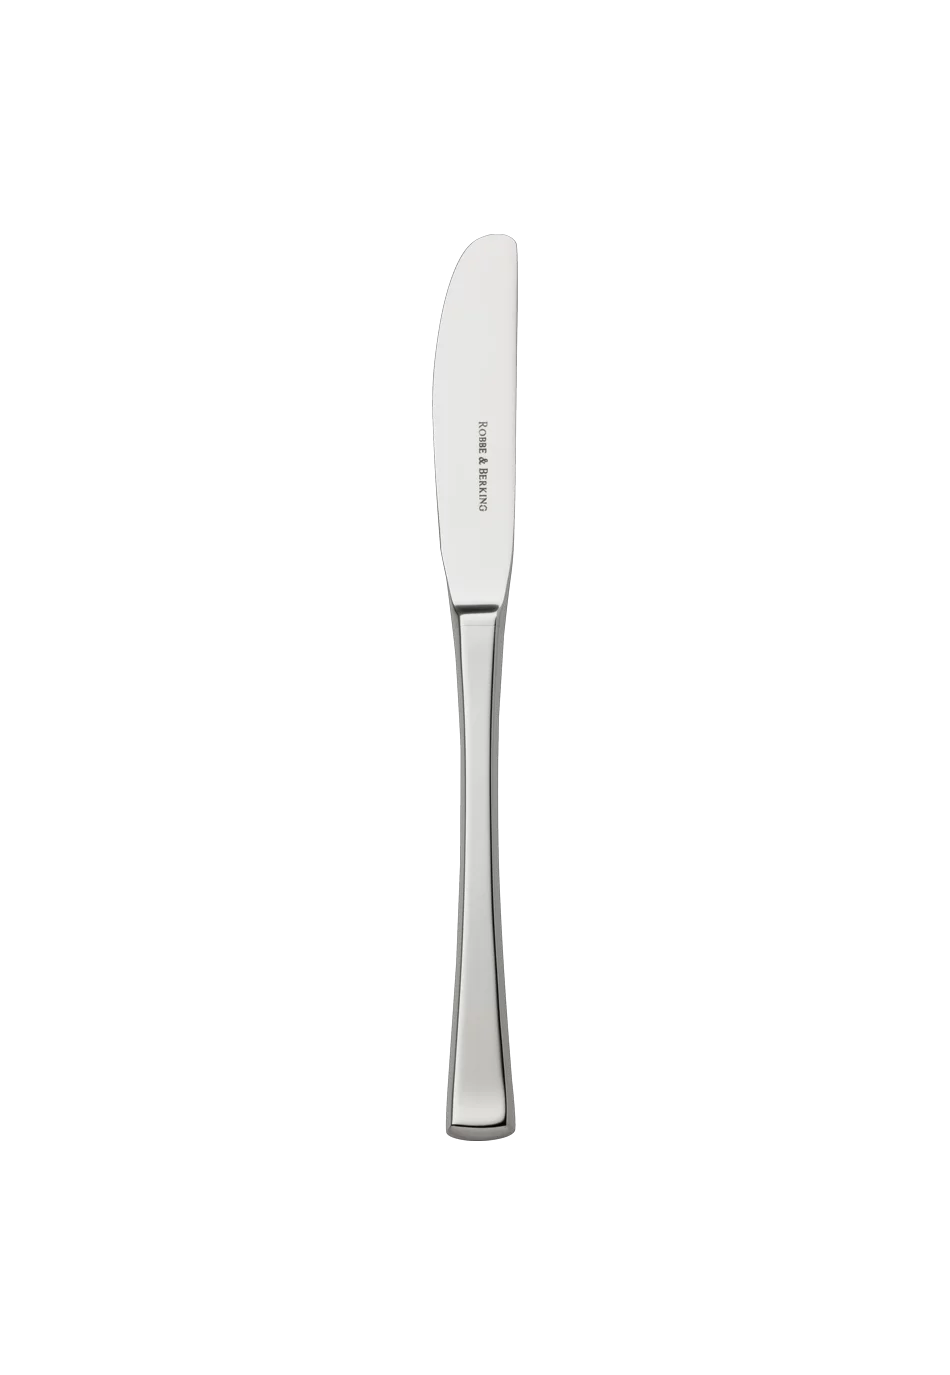 York Dessert Knife (18/8 stainless steel)